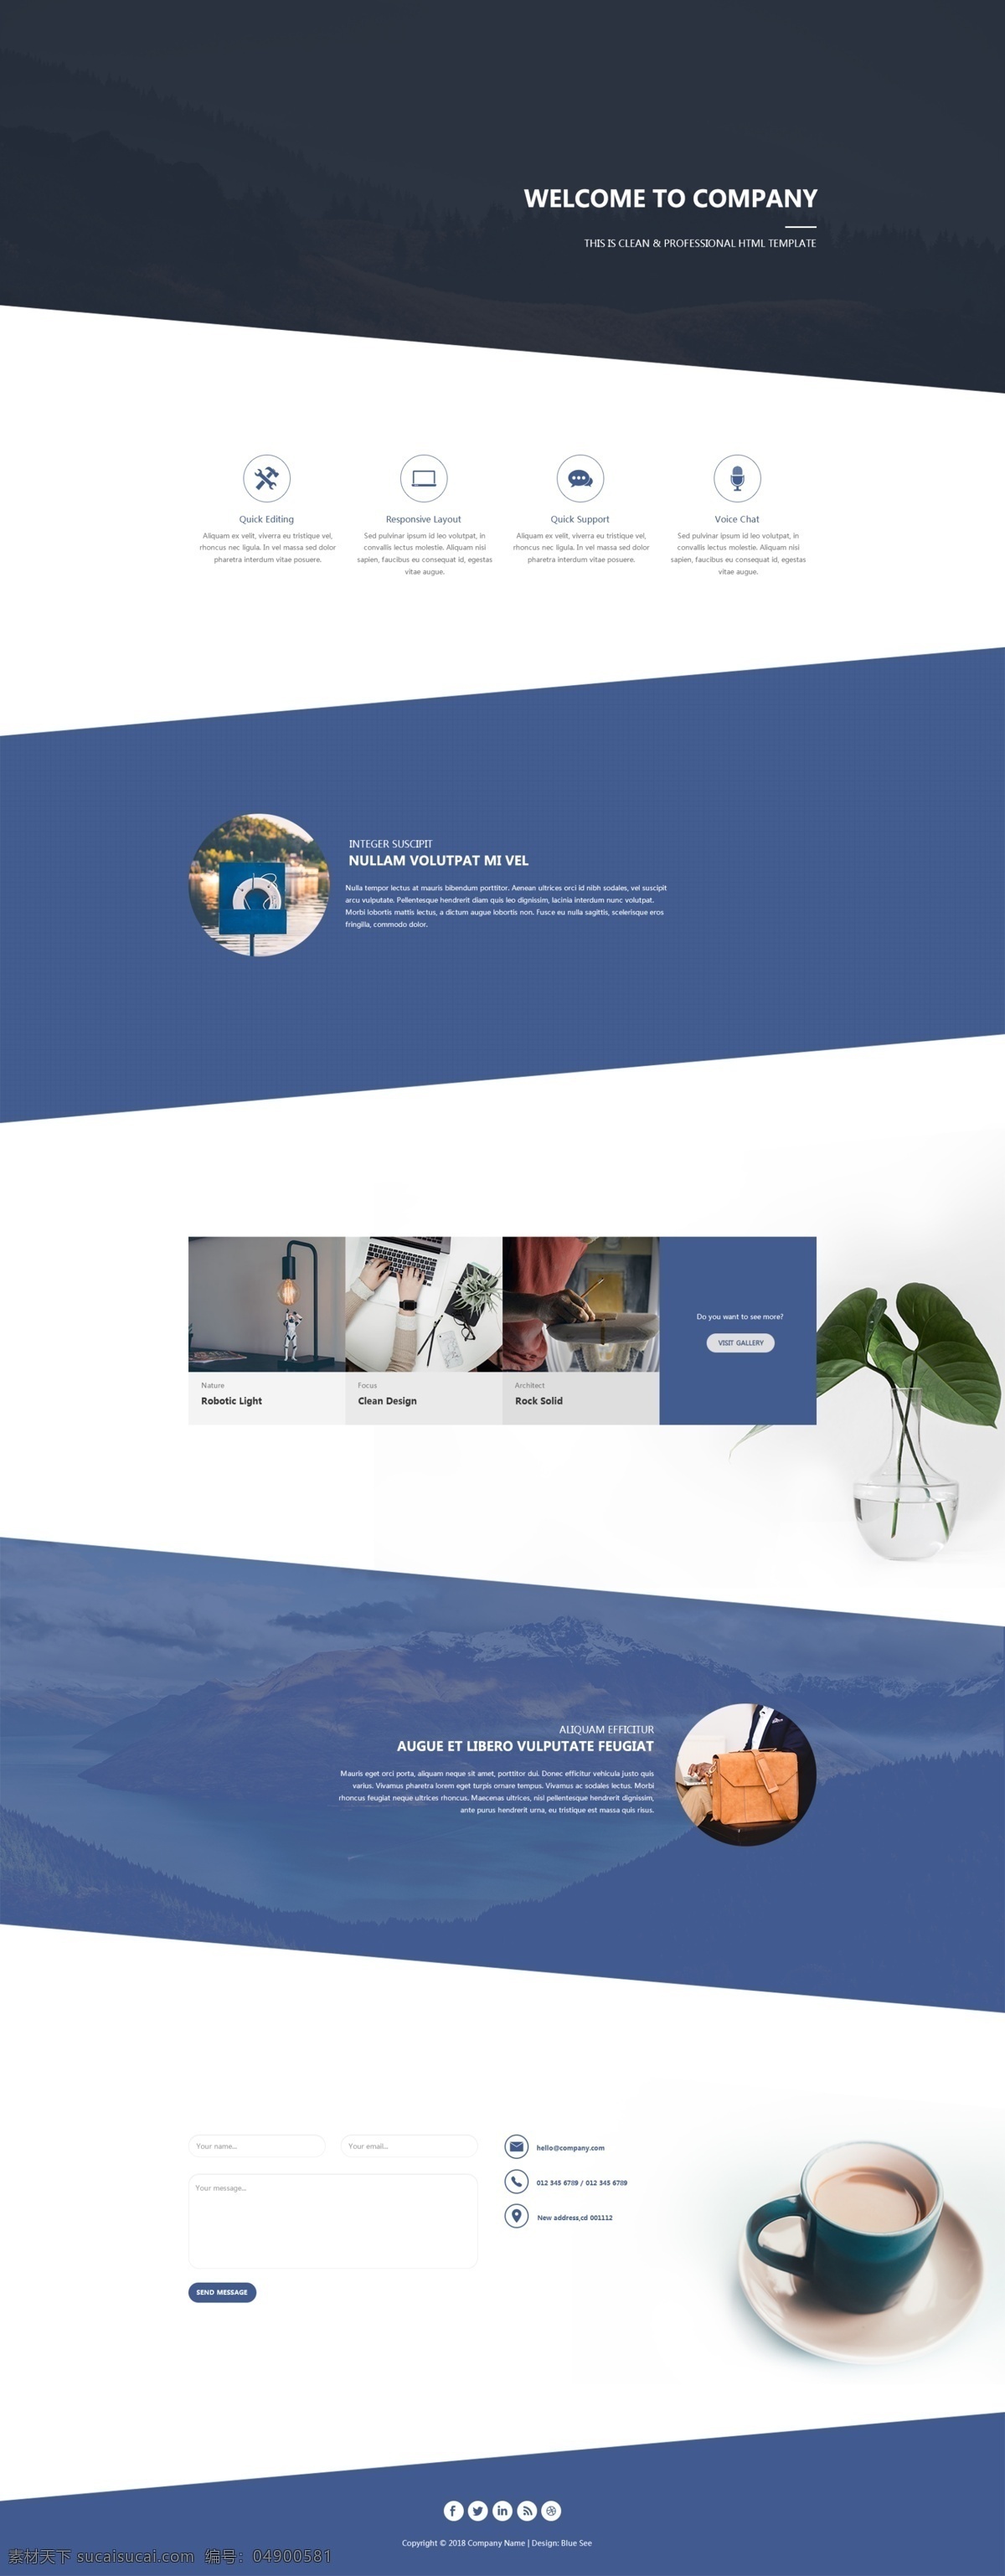 设计公司 网页设计 网页素材 网站模板 界面排版